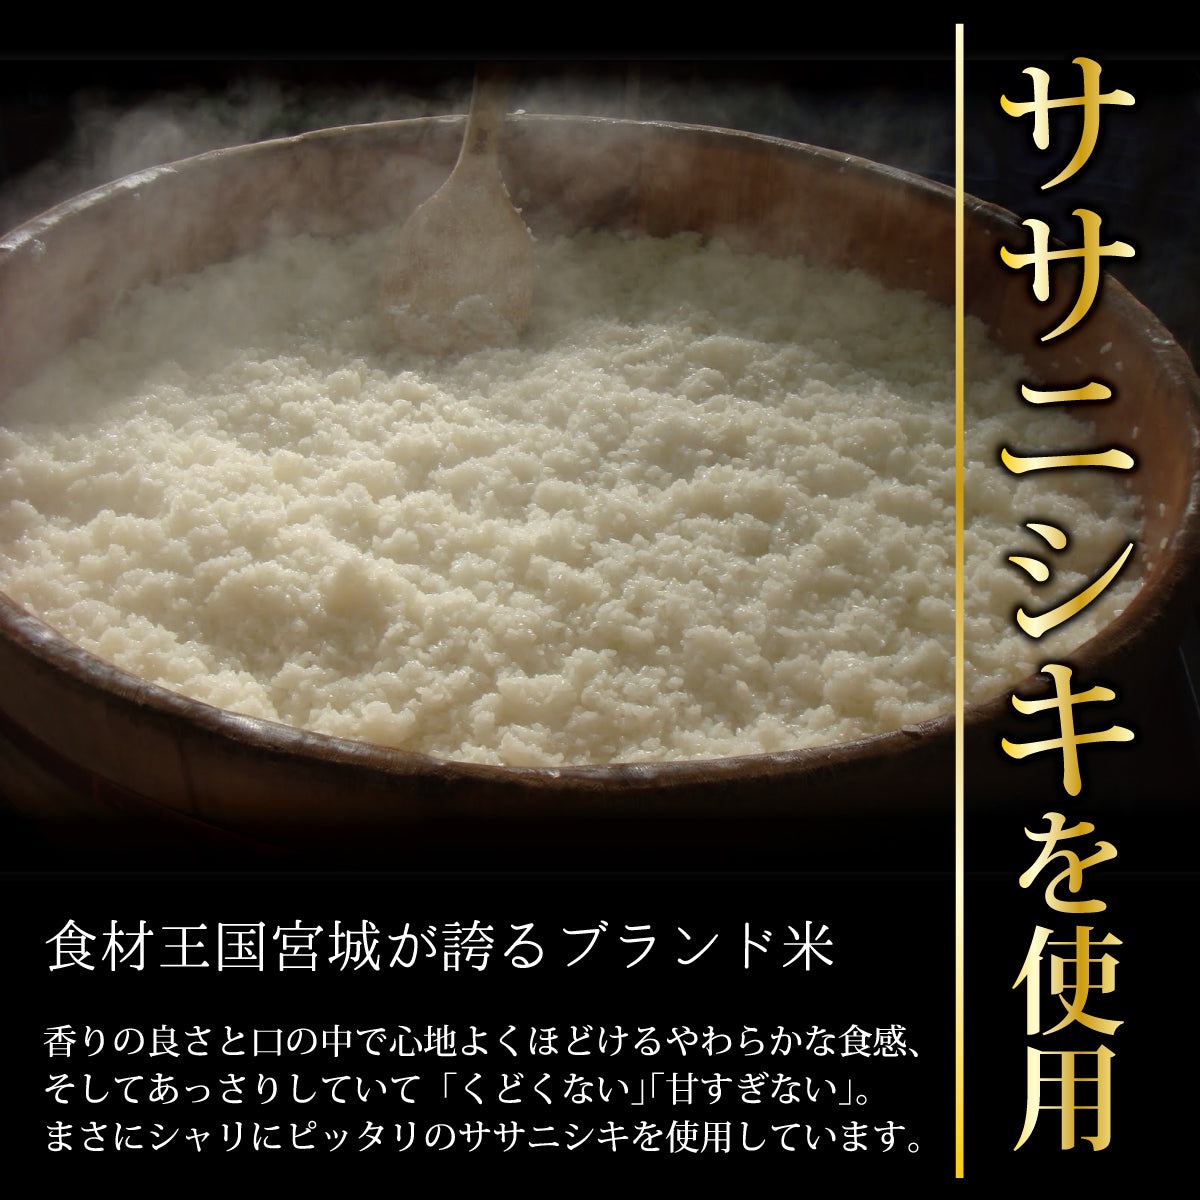 食材王国宮城が誇るブランド米 ササニシキを使用